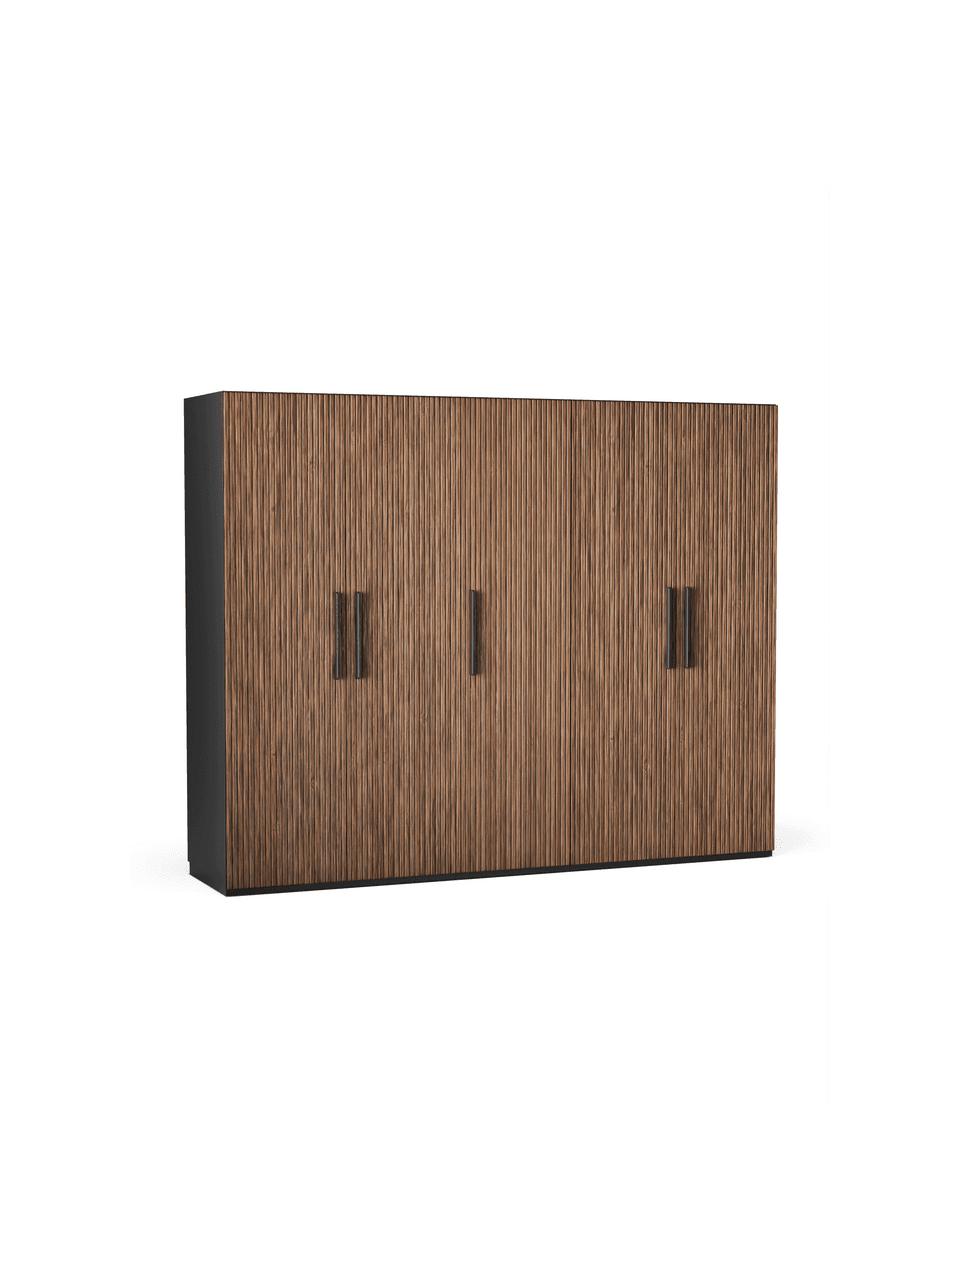 Modulární skříň ve vzhledu ořechového dřeva s otočnými dveřmi Simone, šířka 250 cm, více variant, Vzhled ořechového dřeva, černá, Interiér Premium, výška 236 cm